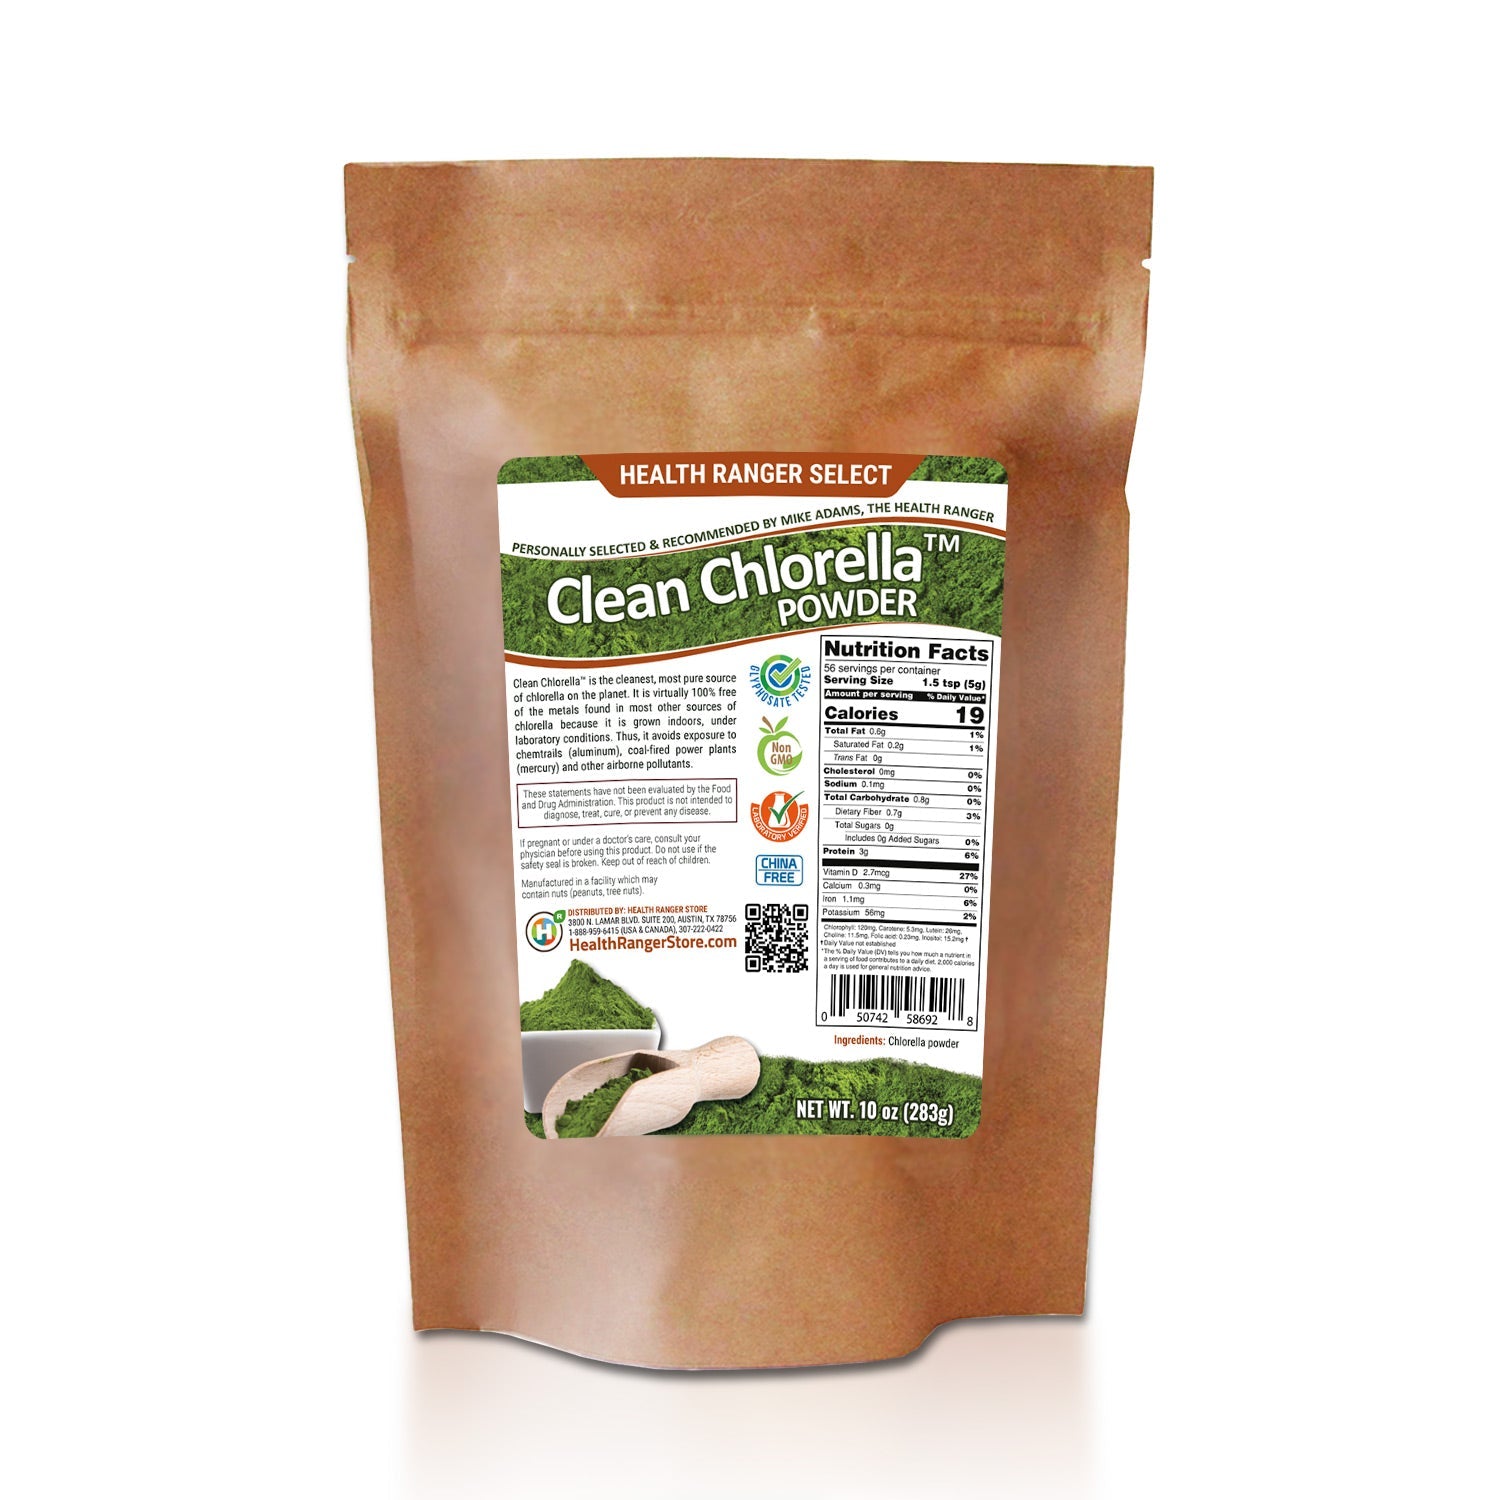 Clean Chlorella Powder 10 oz (283g)